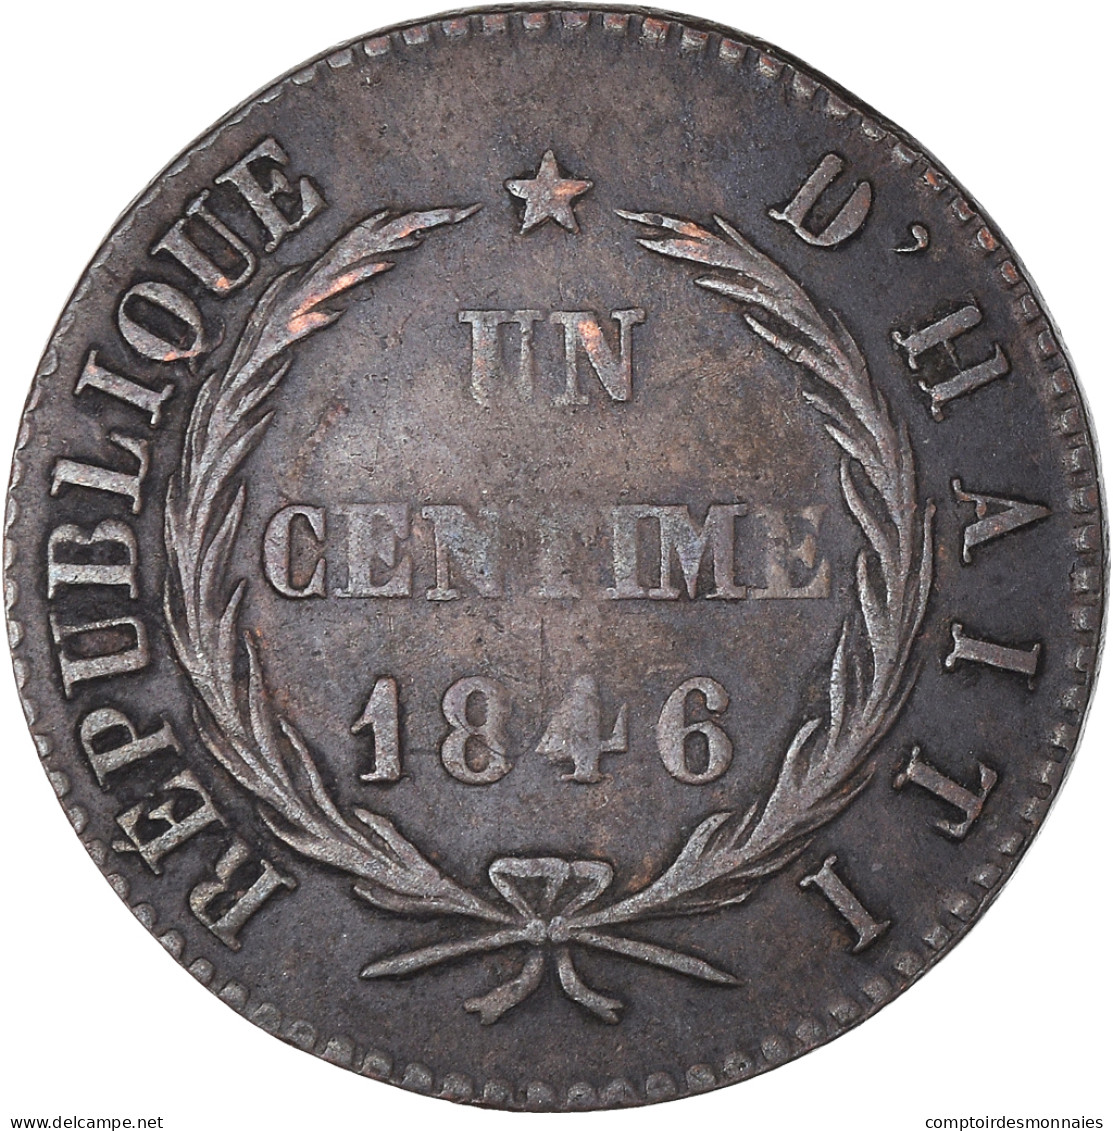 Monnaie, Haïti, Centime, 1846/AN 43, TB+, Cuivre, KM:24 - Haiti